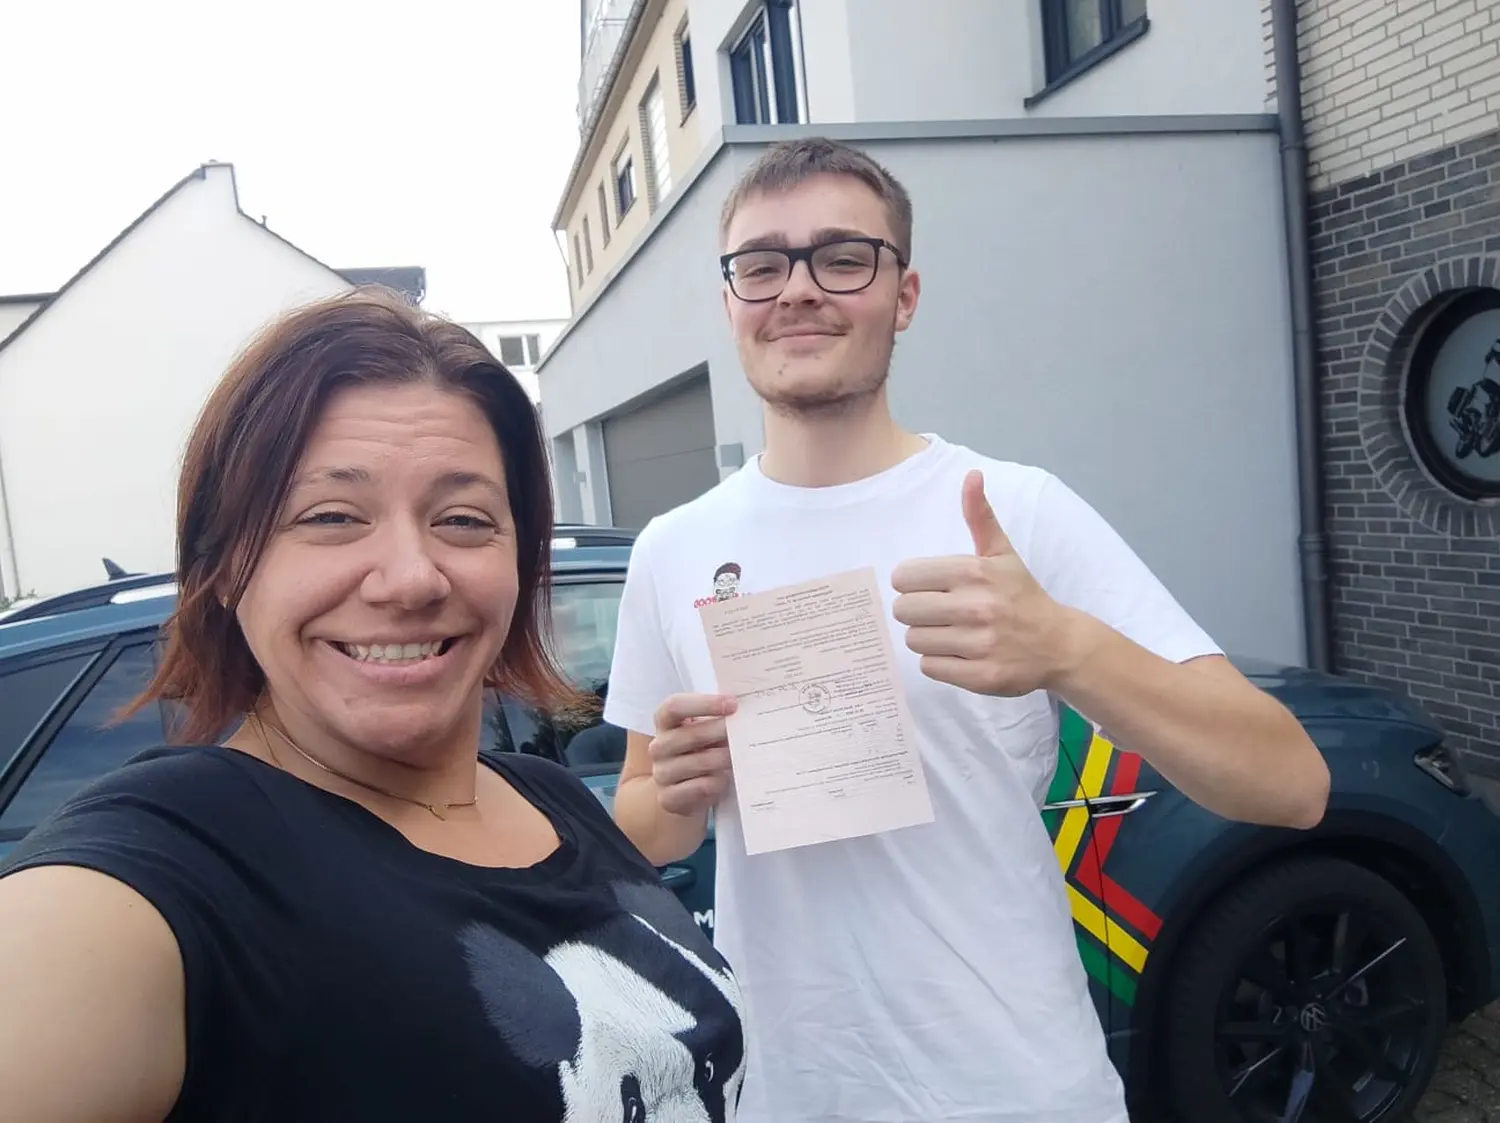 Fahrschulteam Tarnovski GbR, eine lächelnde Frau und ein Junge, der das Zertifikat zeigt